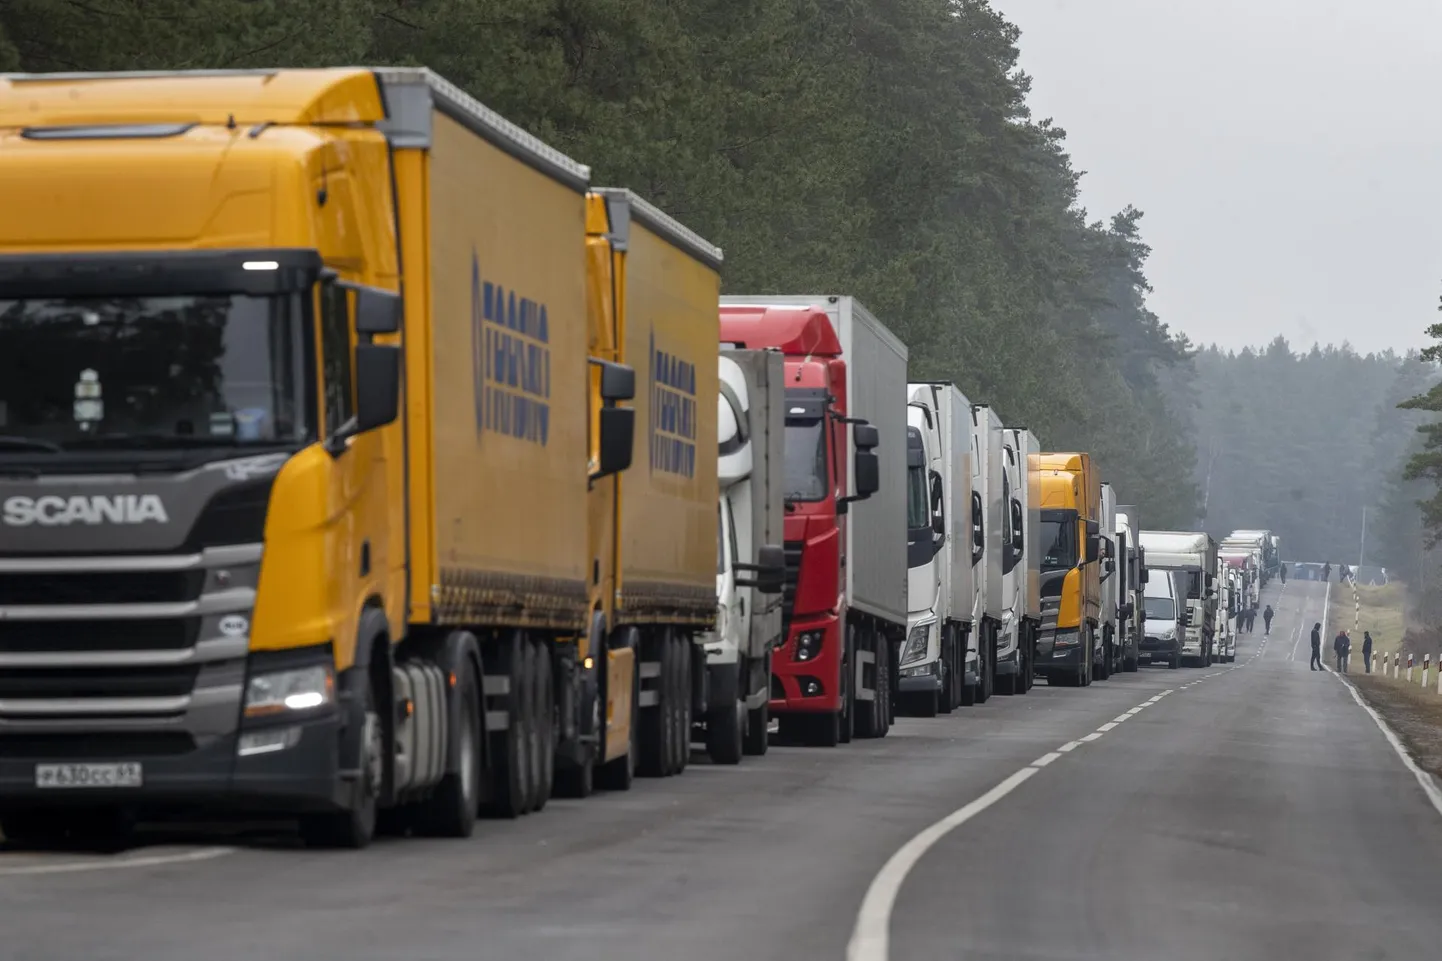 Водители грузовиков пытаются использовать различные схемы для перевозки санкционных товаров через балтийскую границу. Таможенникам не хватает денег и рабочей силы. На фото пограничный пост Райгардас-Привалка в Литве.